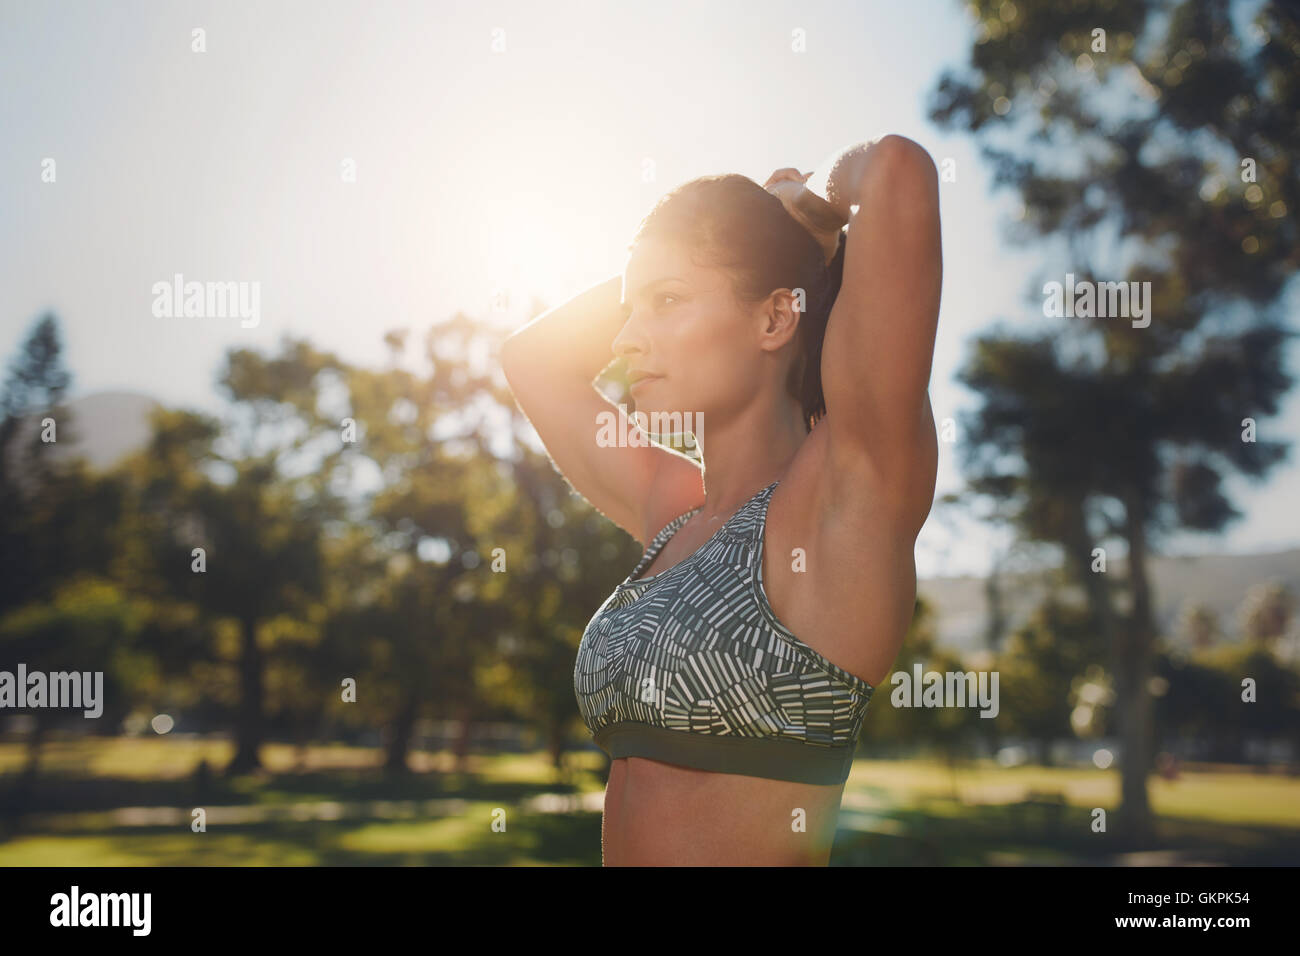 Gros plan du modèle de remise en forme doing stretching exercices dans le parc. Déterminé young woman wearing sports bar exerçant sur un s Banque D'Images